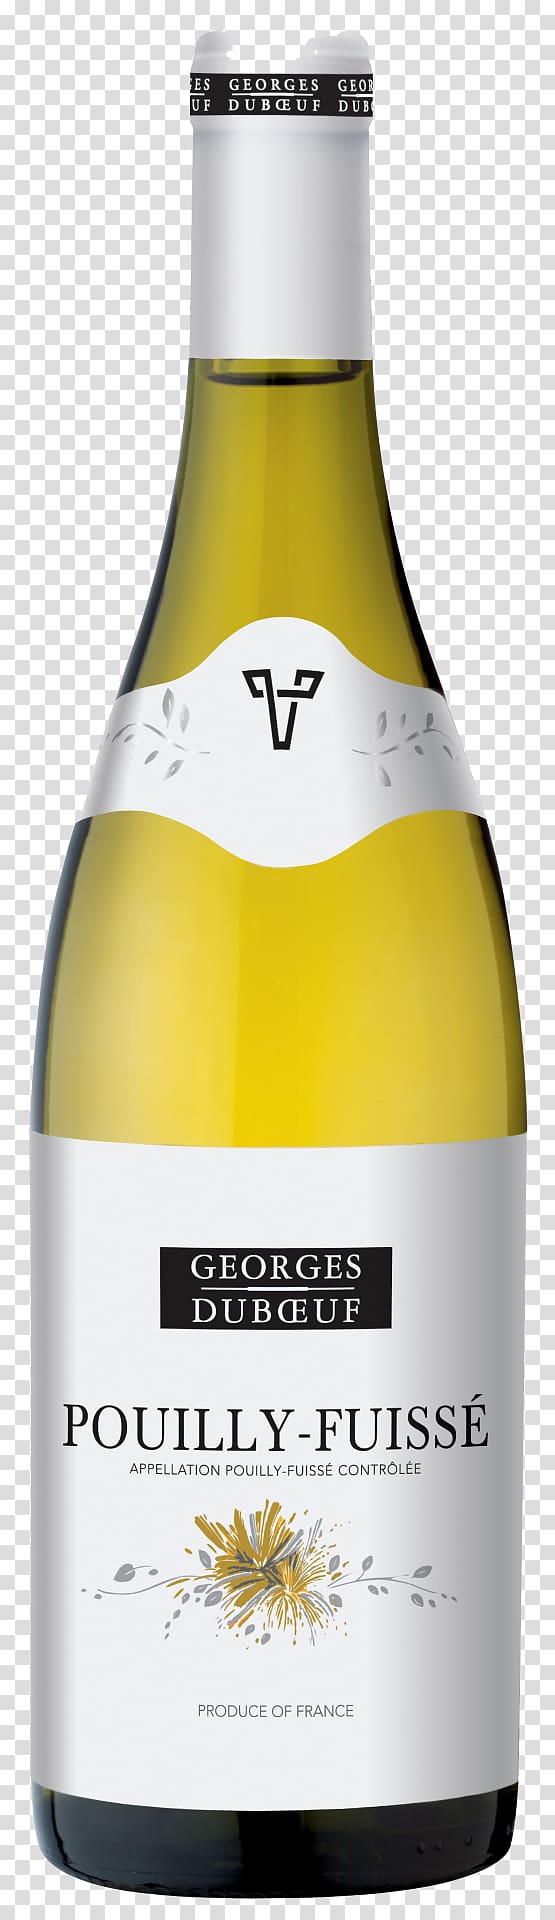 Pouilly-Fuissé AOC Beaujolais White wine, Nv transparent background PNG clipart